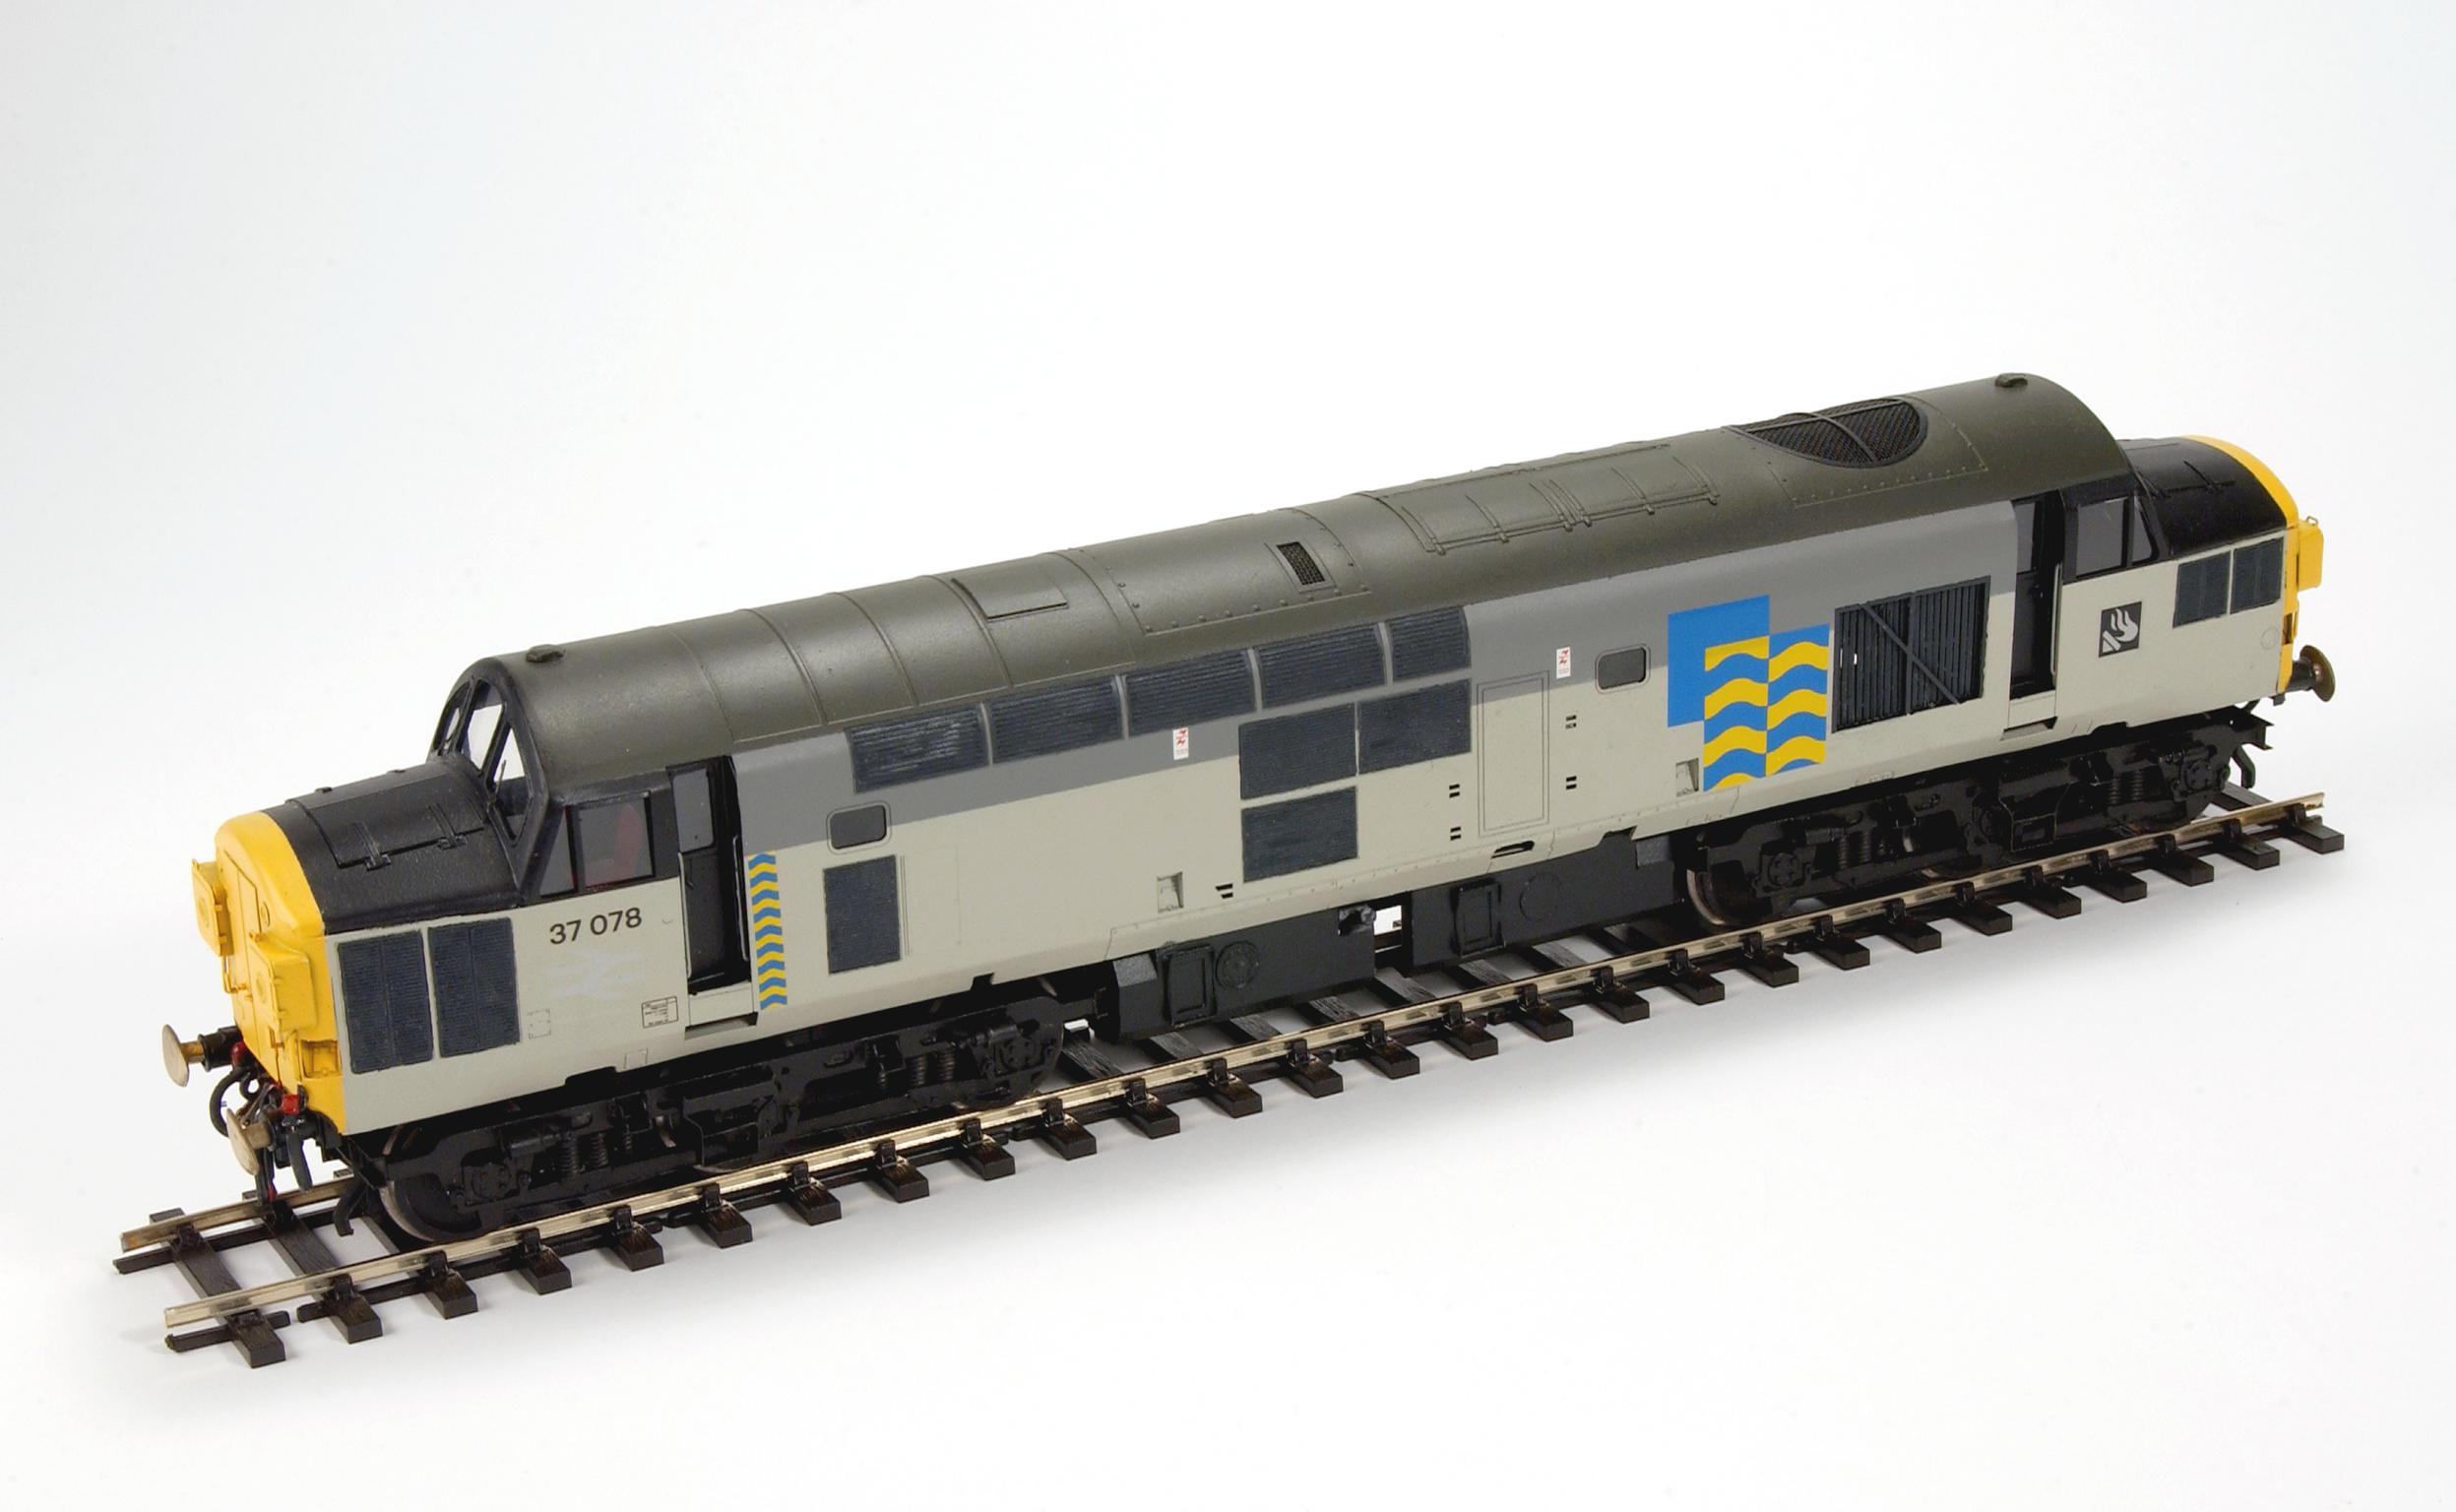 Type 37 diesel locomotive, model